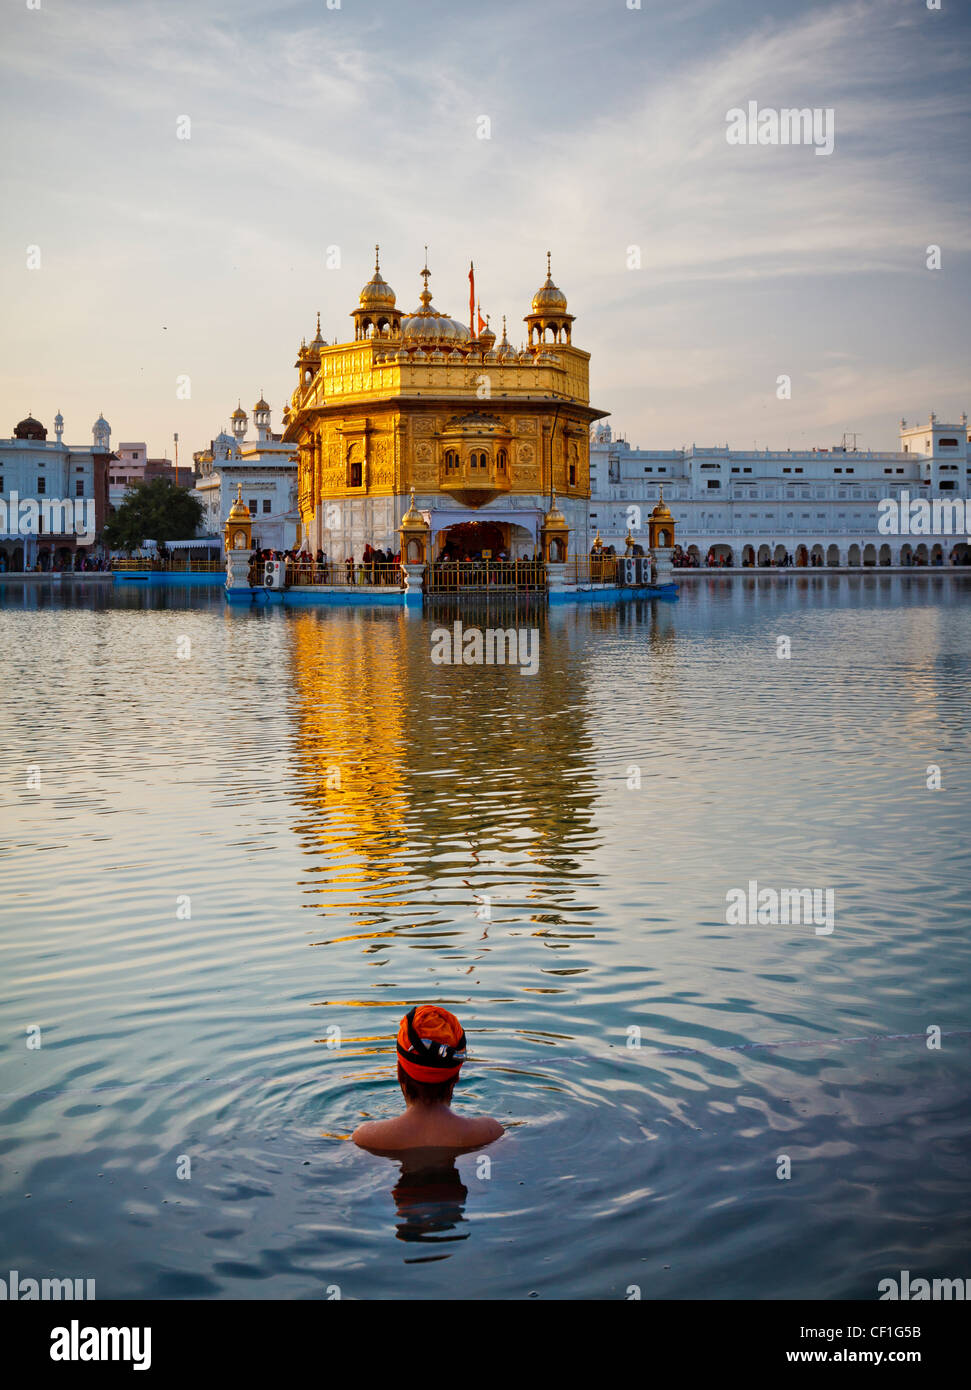 Ein Sikh Mann mit Turban nimmt ein Bad im Pool rund um den goldenen Tempel von Amritsar, Punjab, Indien Stockfoto